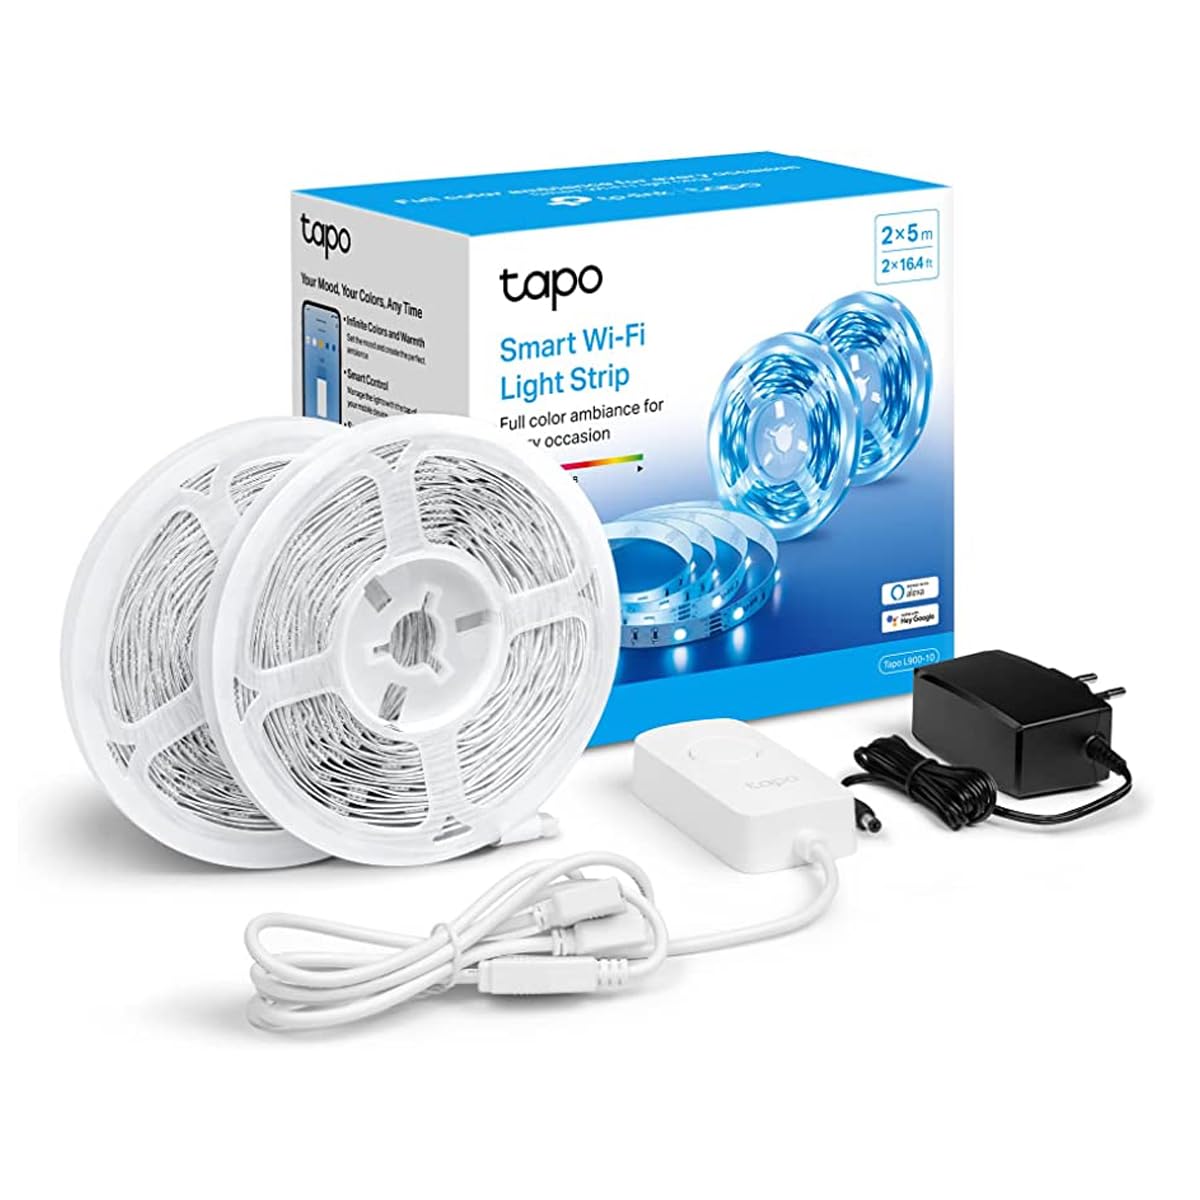 Tapo Smart Wi Fi Light Strip Tapo L900-5 review 